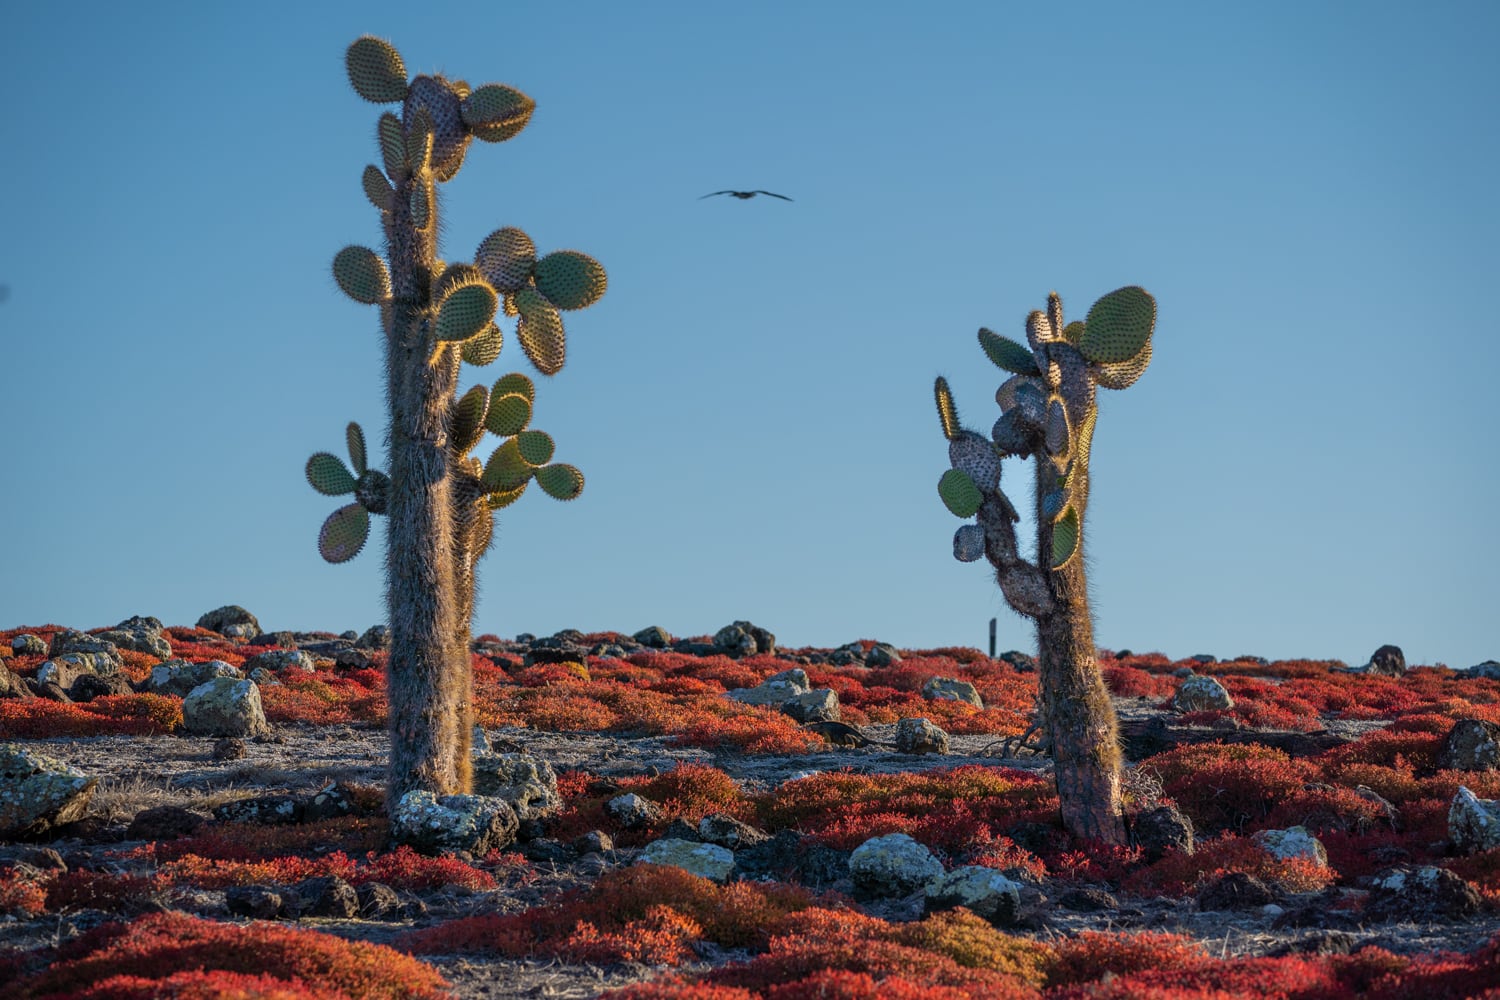 Galapagos cactus - vacations in galapagos islands